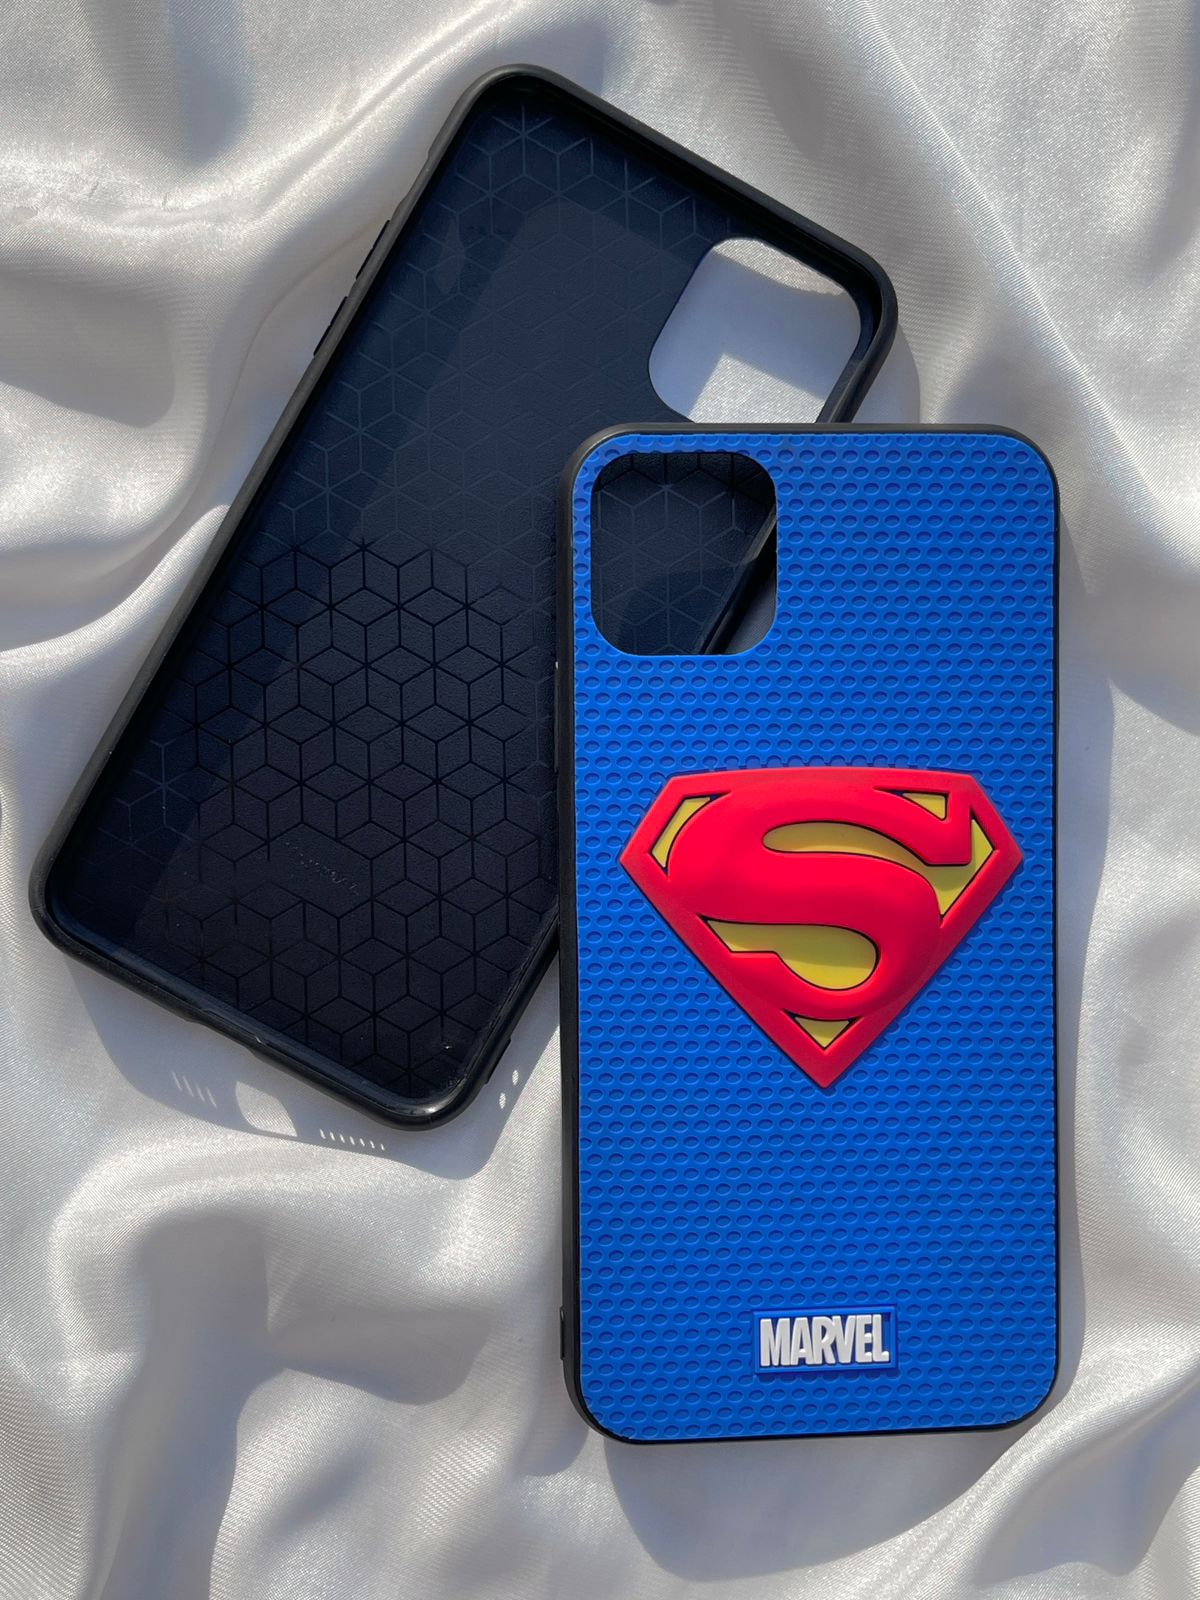 iPhone "11 Pro Max" Super-Man 3D Embossed Case